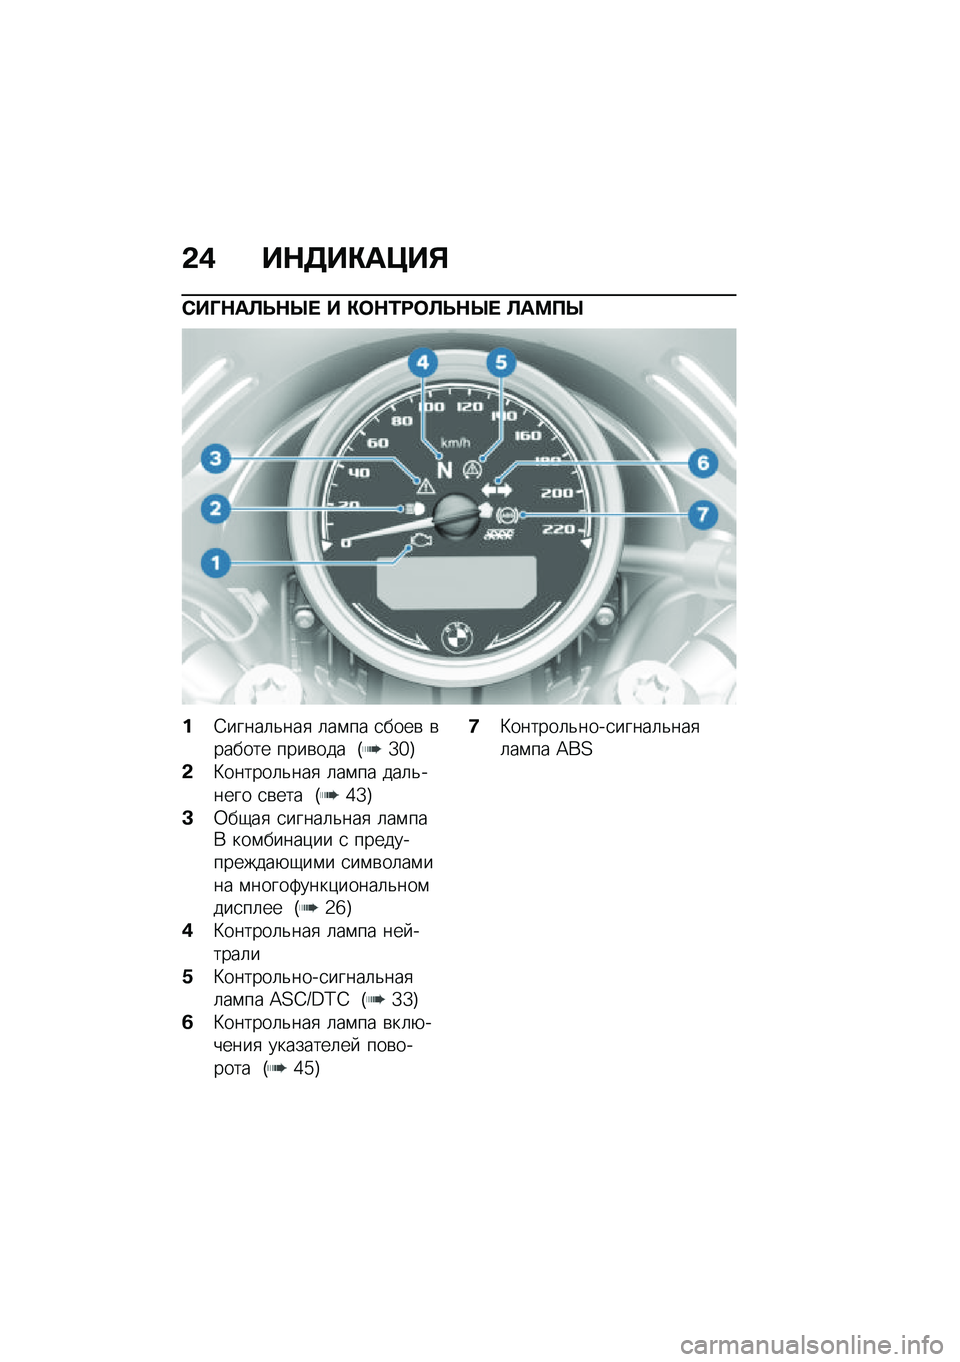 BMW MOTORRAD R NINE T URVAN G/S 2020  Руководство по эксплуатации (in Russian) �&�( ��$�3��"��=��%
�)��P�$��A�F�$�R�  � �"�	�$�/�:�	�A�F�$�R�  �A��<�?�R
��4�����	�&���
 �	��\f�� �
����\b �\b������ ����\b��� �G�Z�`�H
�&�L������	�&���
 �	��